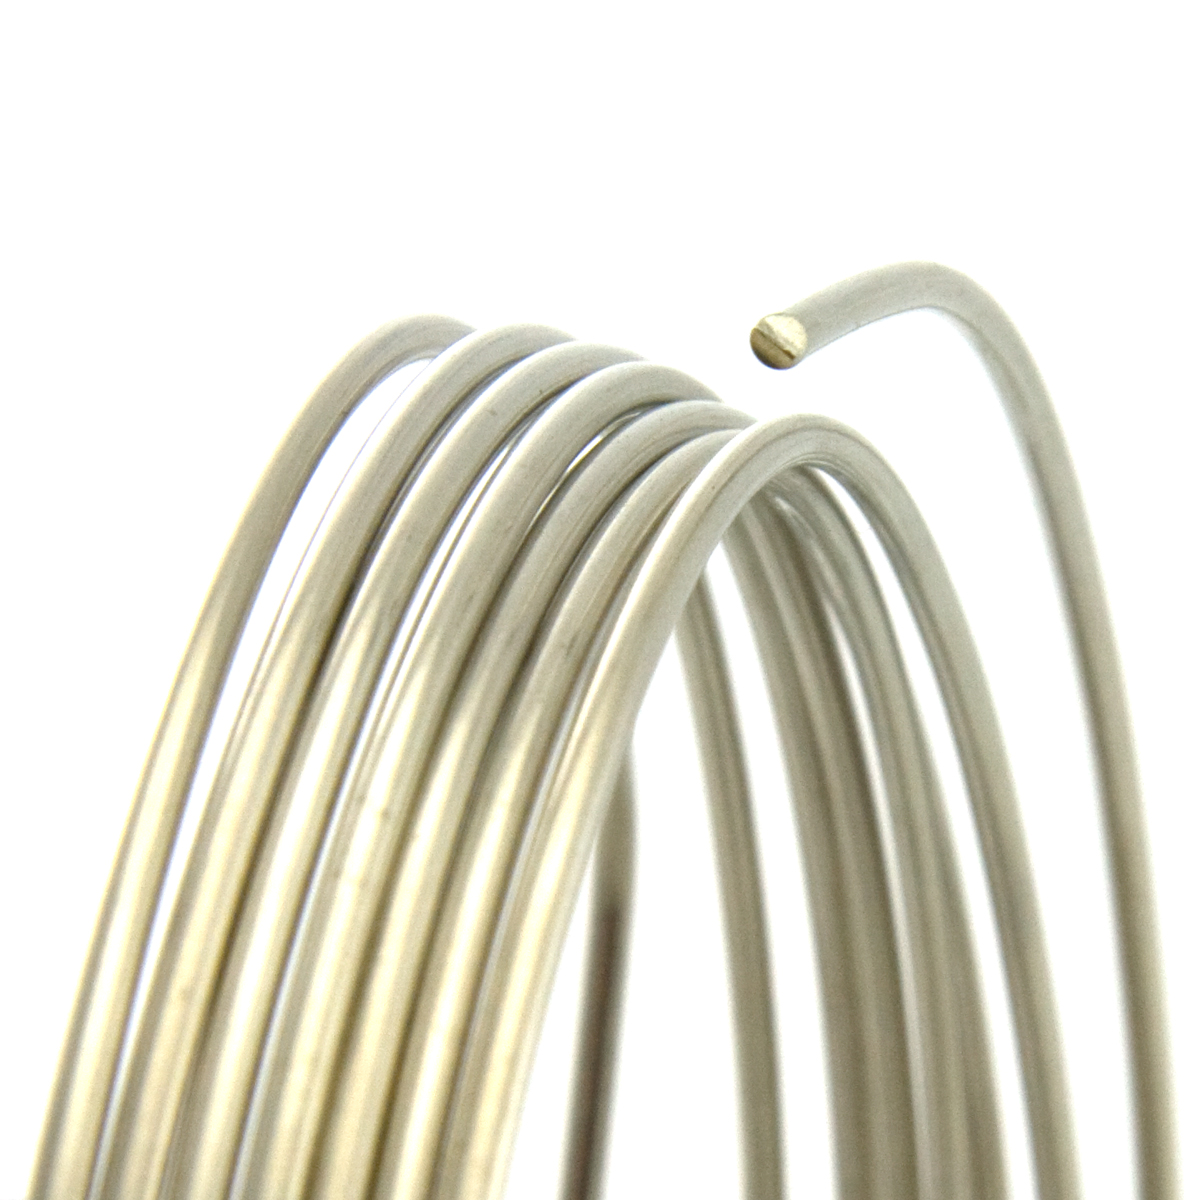 21 Gauge Round Half Hard Nickel Silver Wire: Jewelry Making